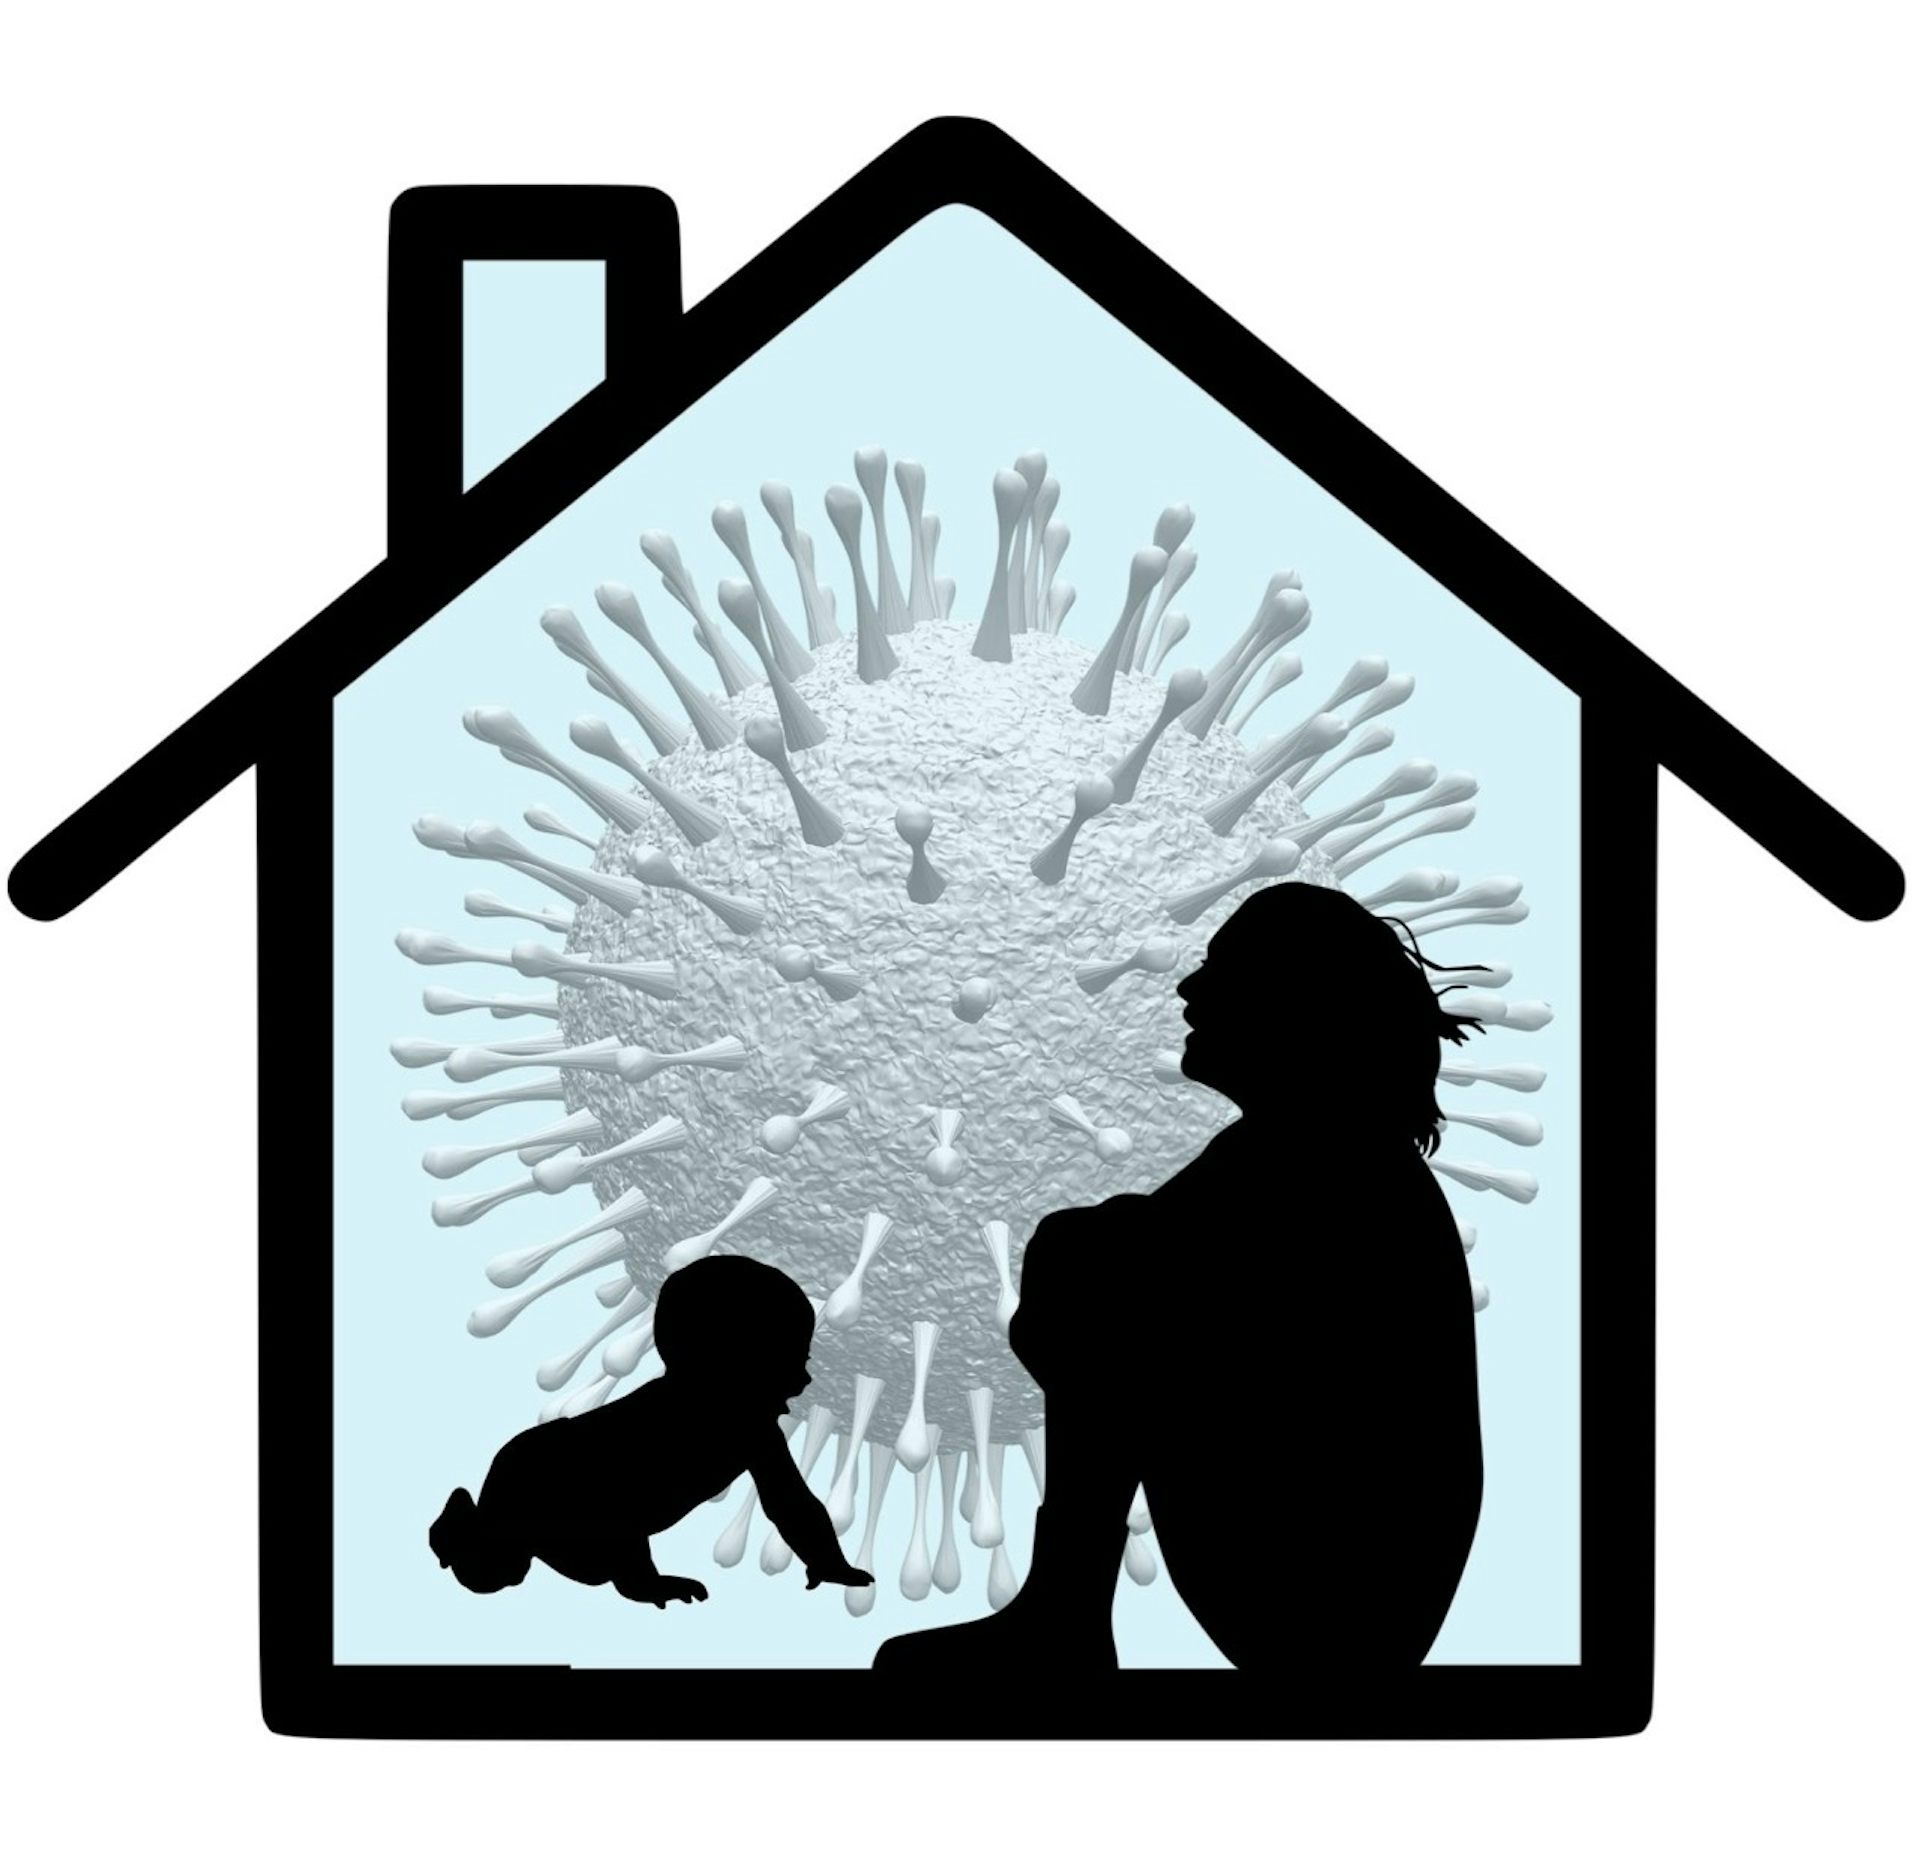 sylwetki kobiety siedzącej, obejmującej kolana i czołgającego się dziecka Na tle zarysu domu i obrazu koronawirusa